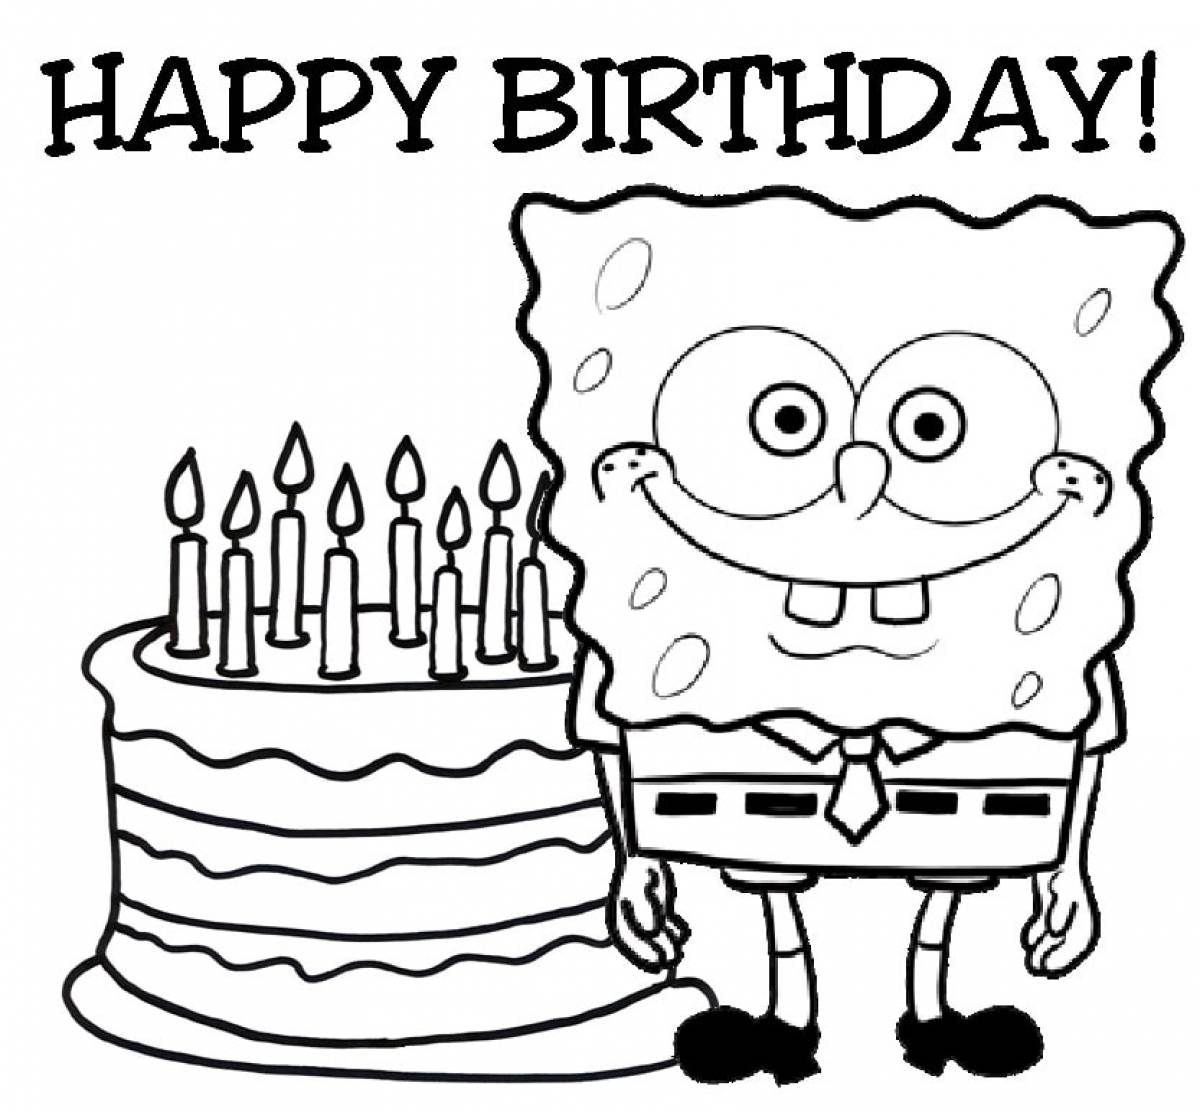 Happy birthday spongebob